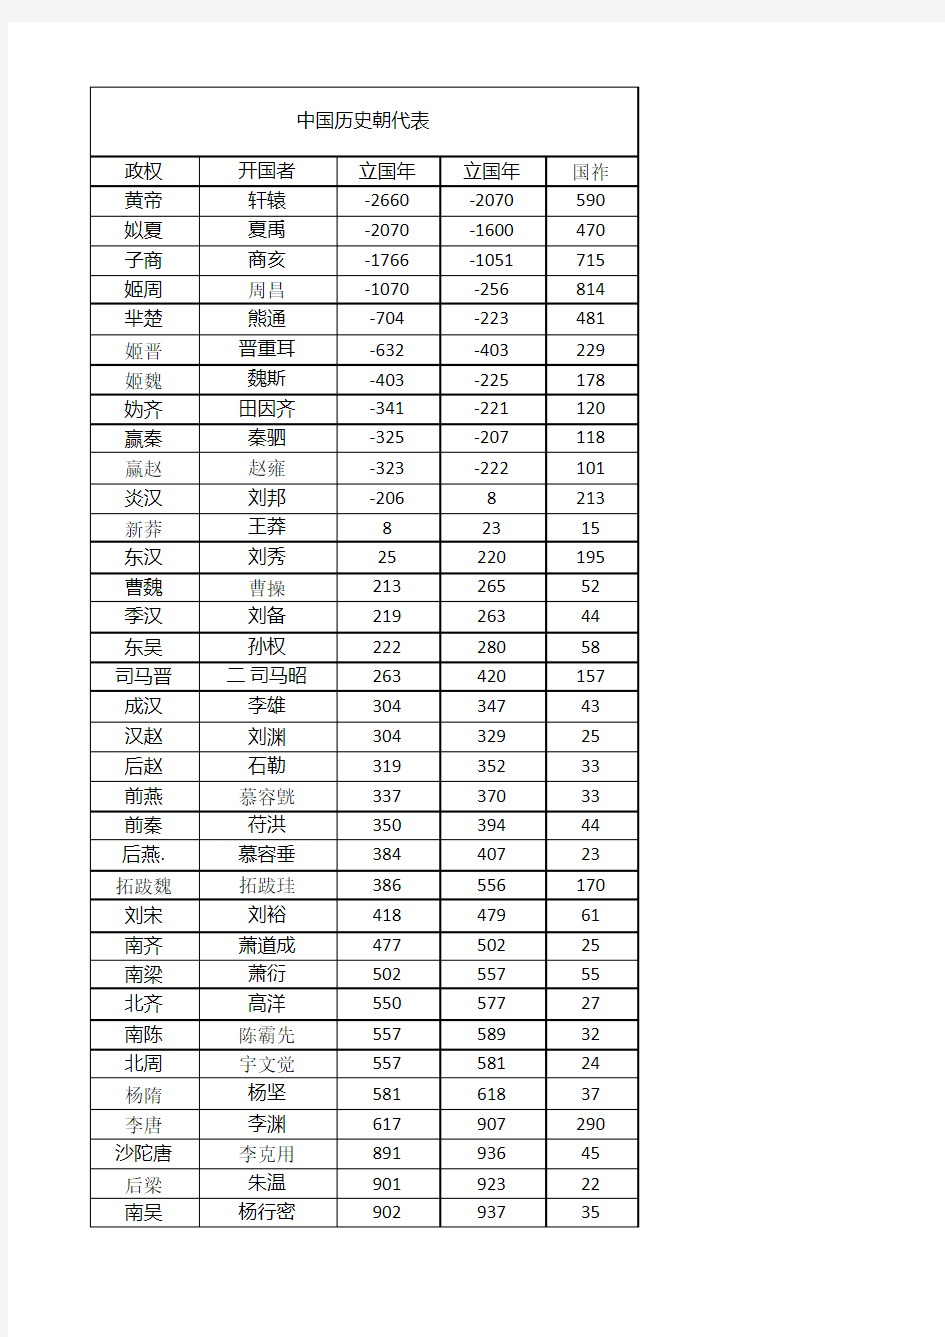 中国朝代顺序完整表(表格 含开国者 存在年份及时间)